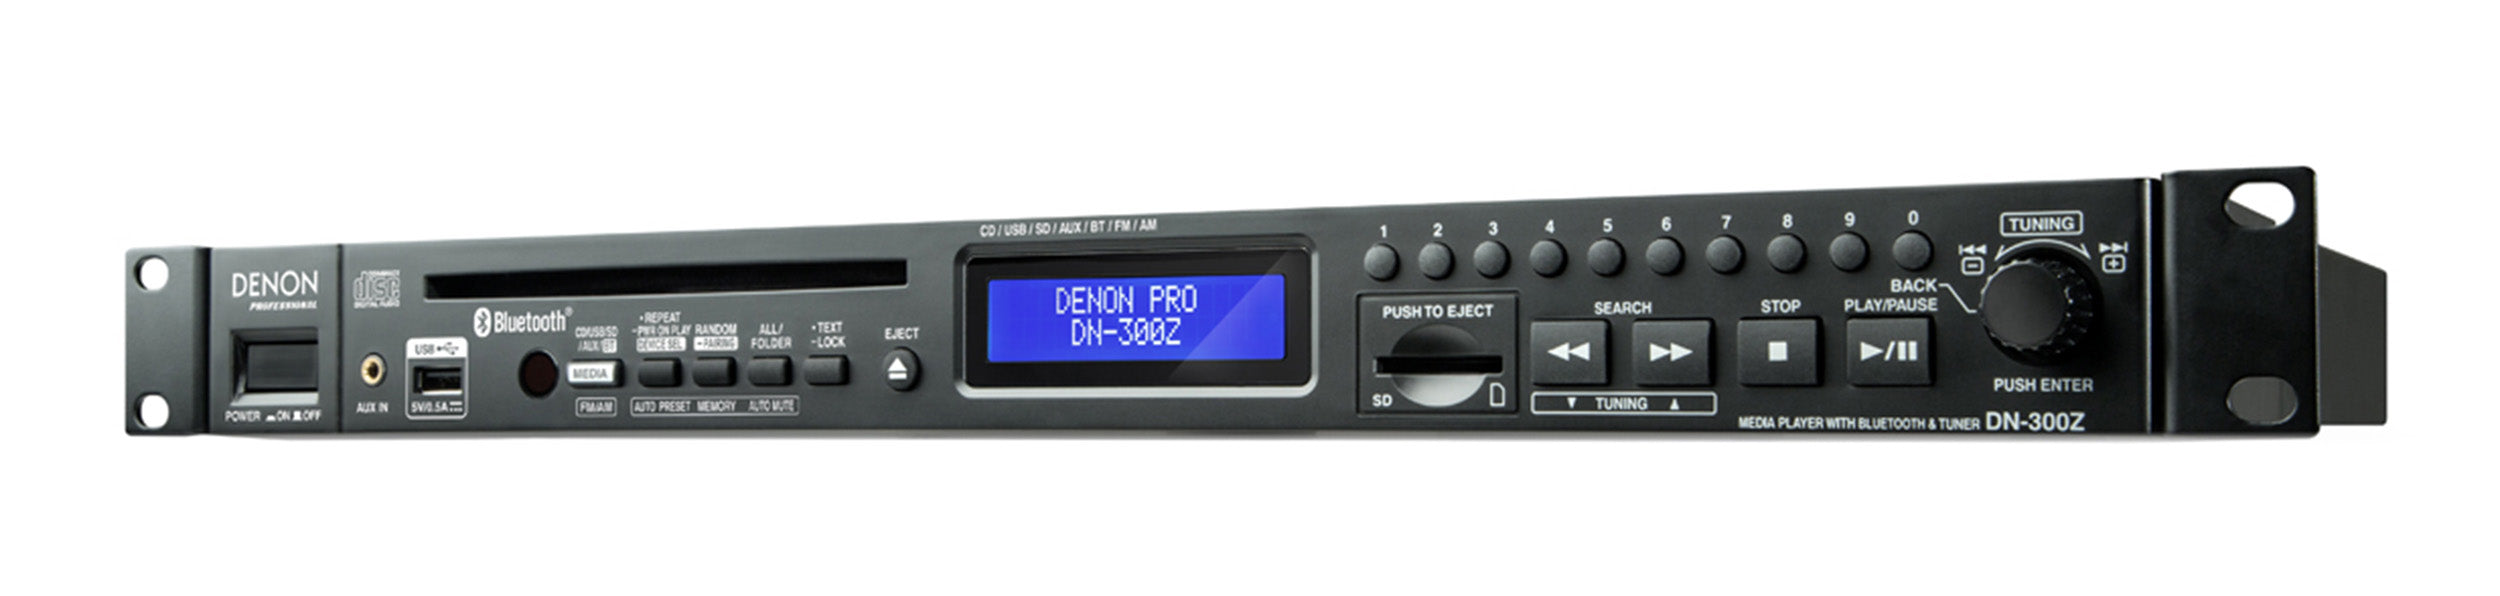 Denon Professional DN-300Z Audio Recording and Playback Media Player Denon DJ